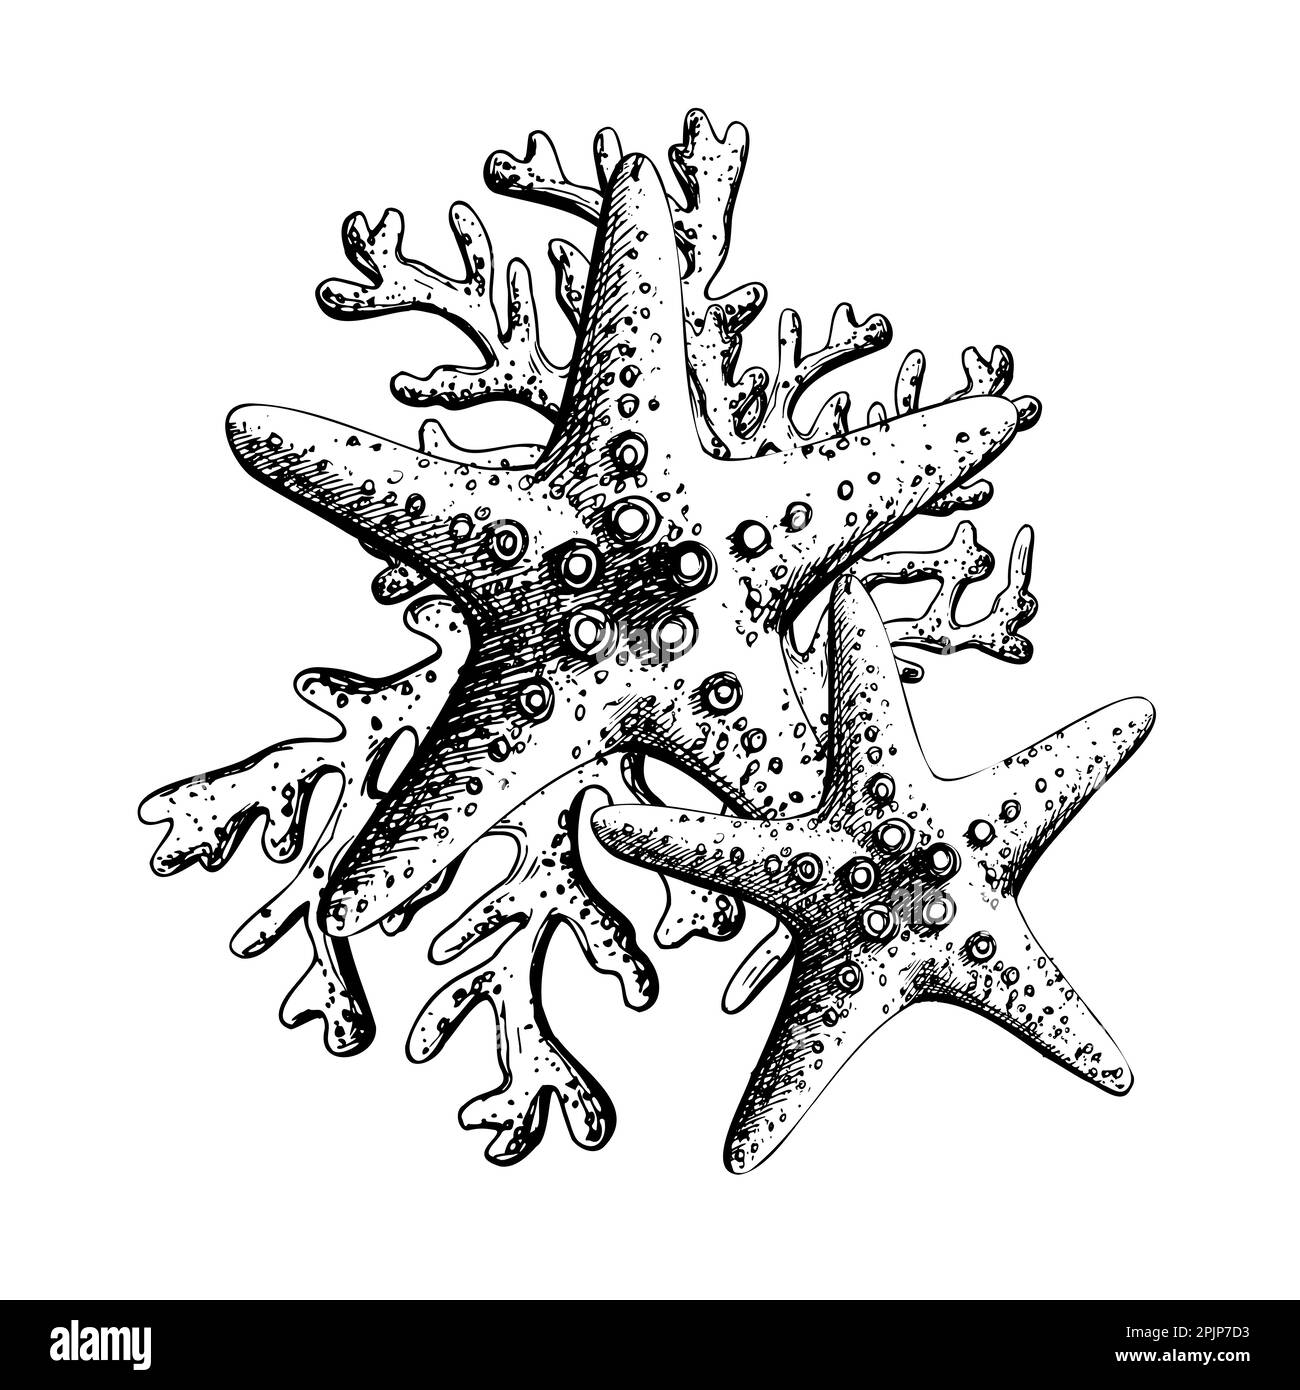 Seesterne mit Korallen, isolierte Komposition auf weißem Hintergrund, handgezeichnet im Grafikstil. EPS-Vektordarstellung. Für Abzüge, Poster, Karten Stock Vektor